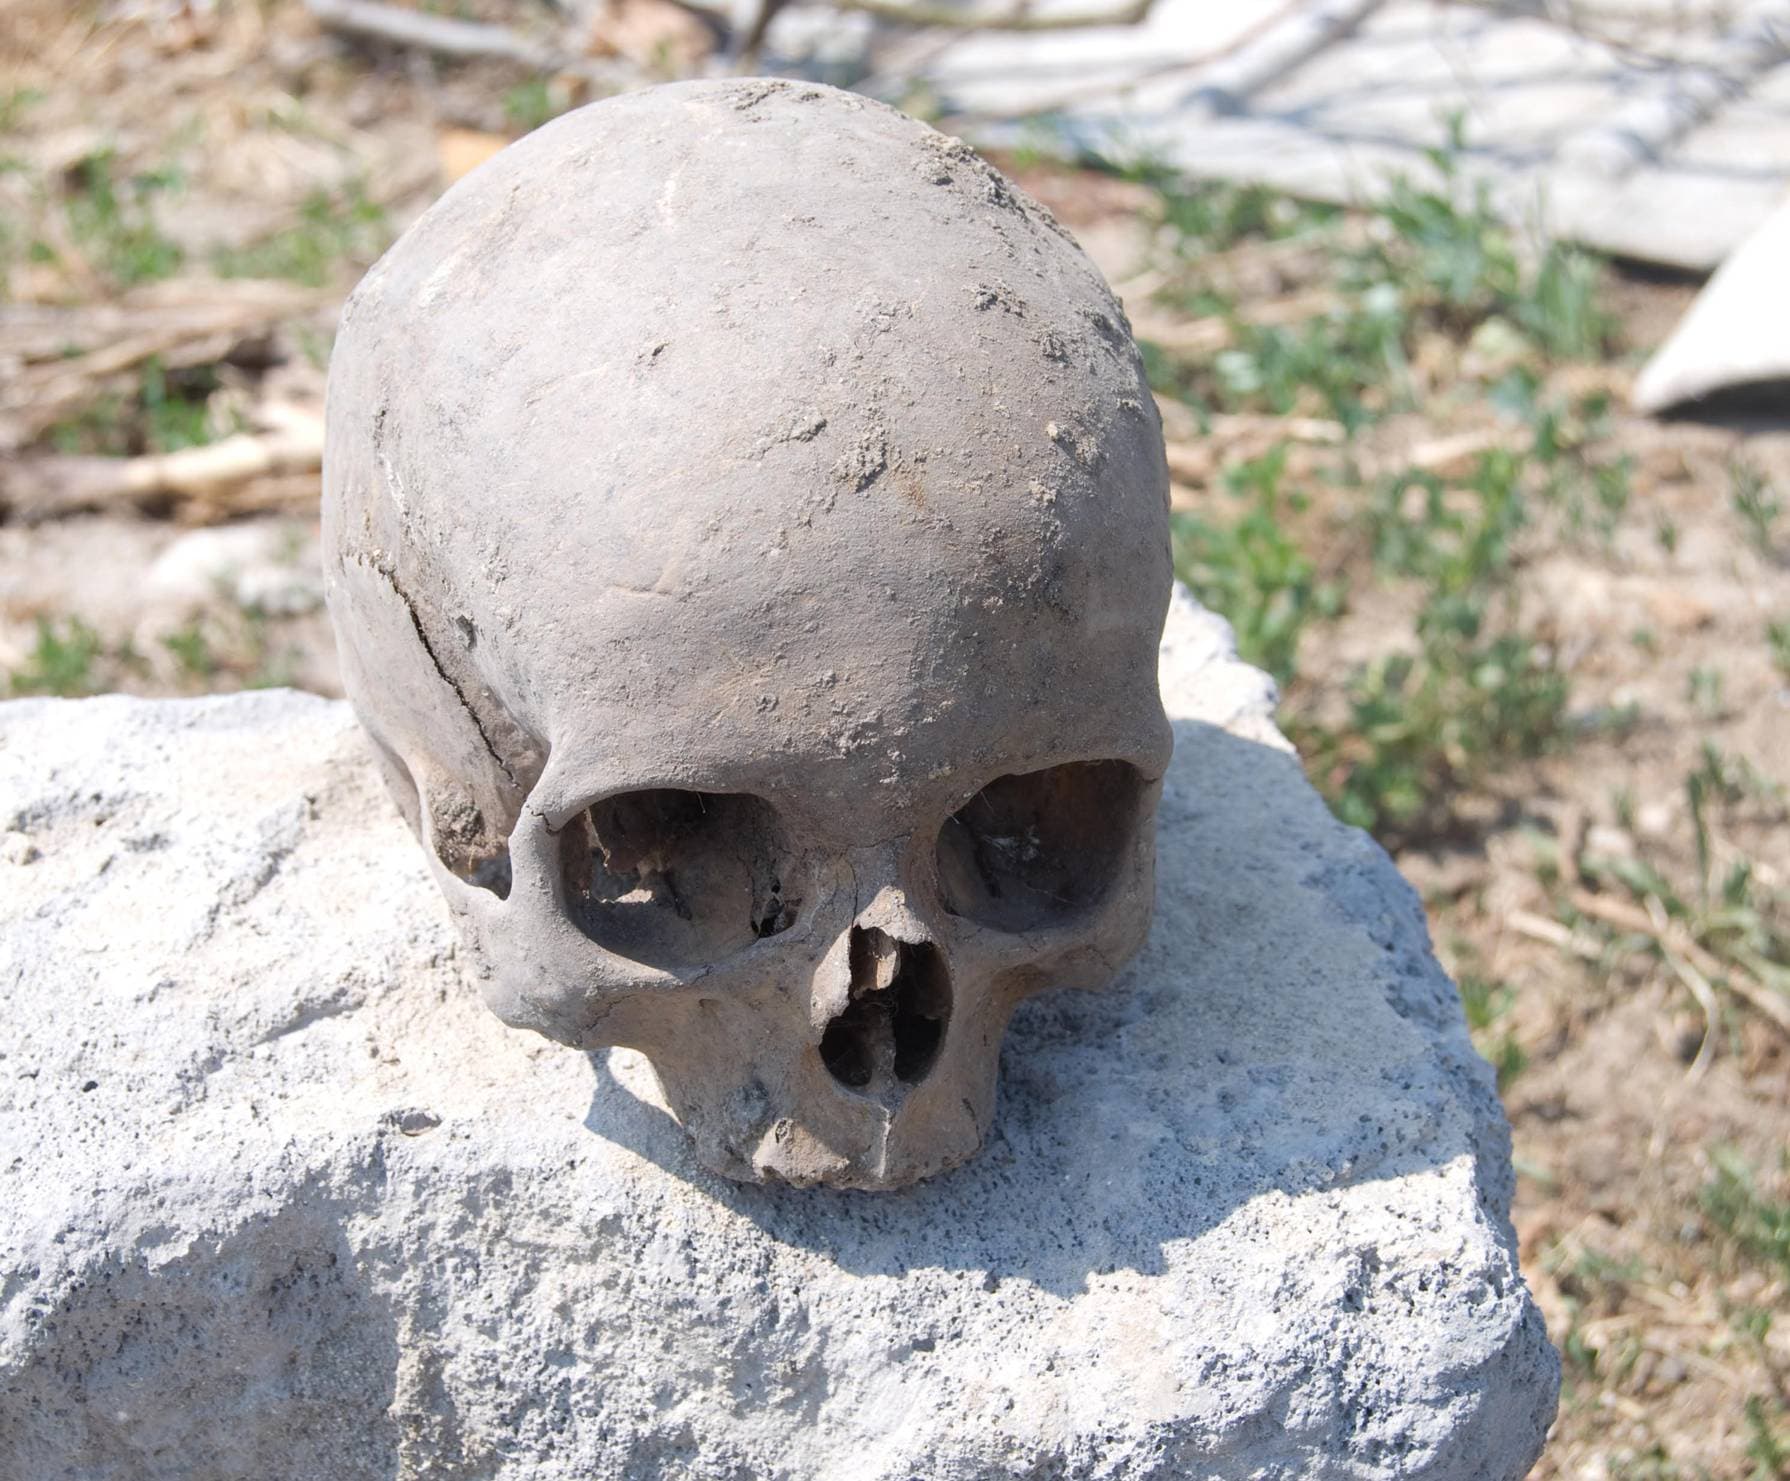 Rejtélyes foghúzási gyakorlatról árulkodó ősi csontvázakat tártak fel